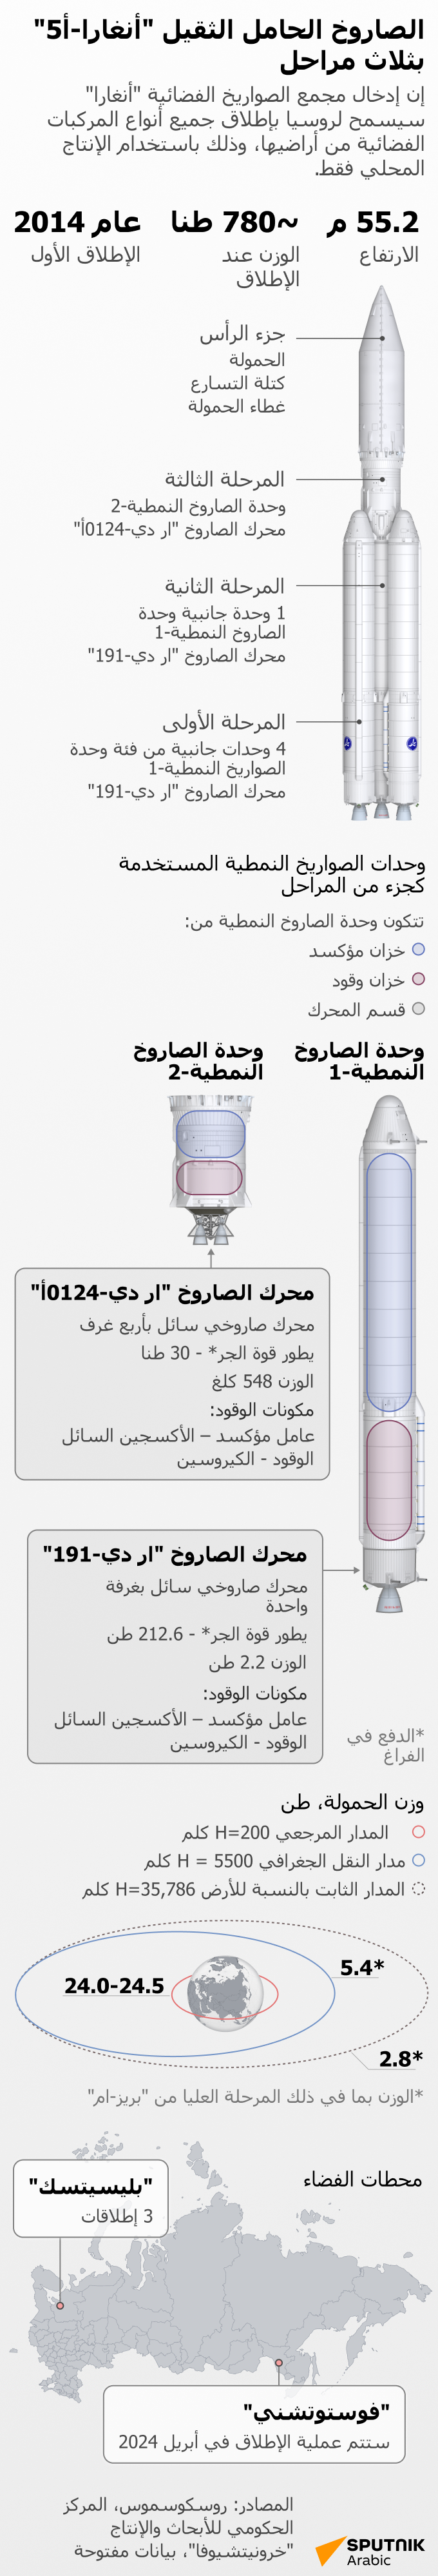 الصاروخ الحامل الثقيل أنغارا-أ5 بثلاث مراحل  - سبوتنيك عربي